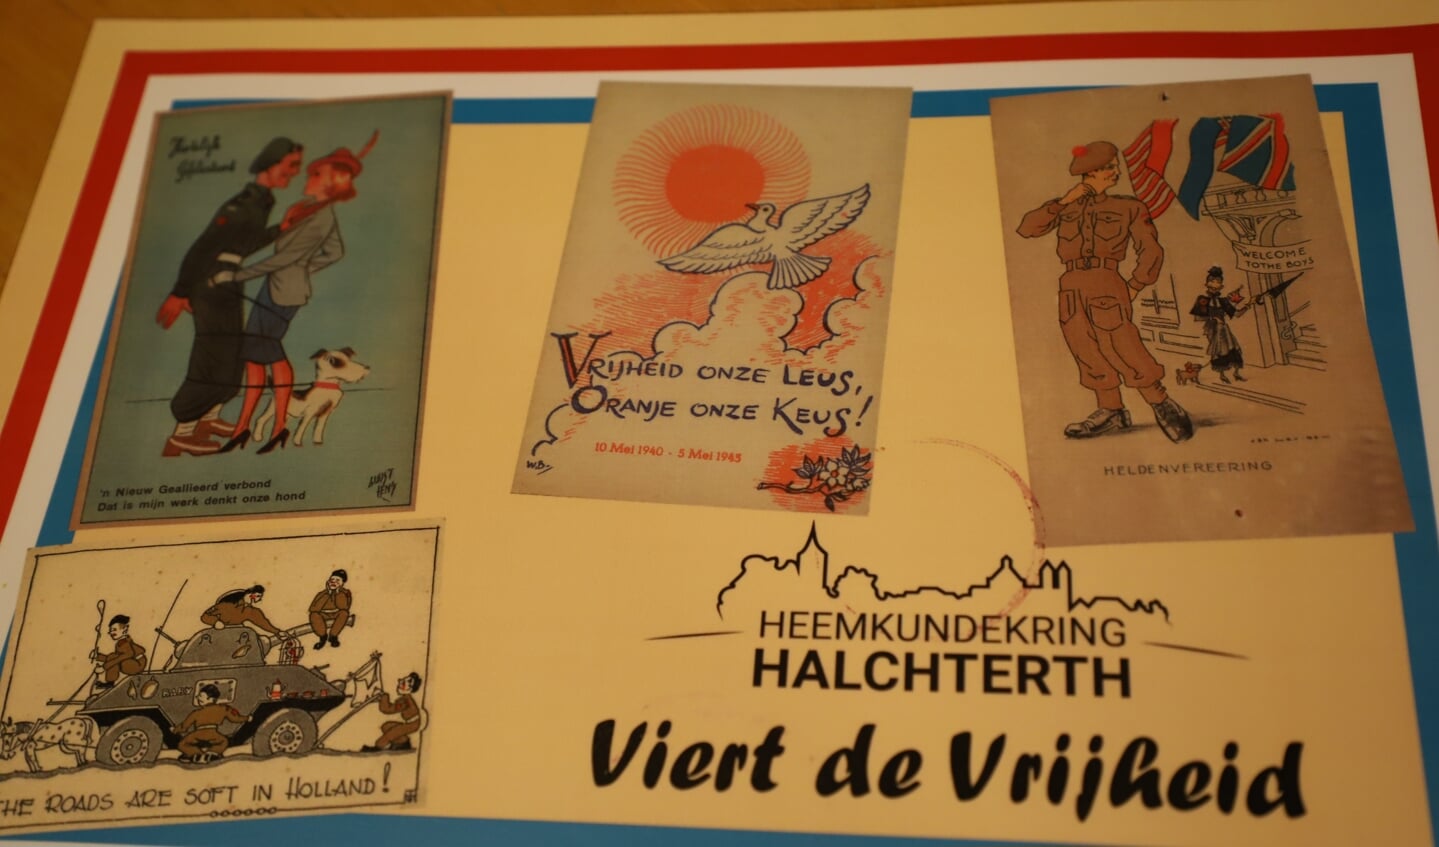 Tentoonstelling Heemkundekring Halchterth viert de vrijheid.